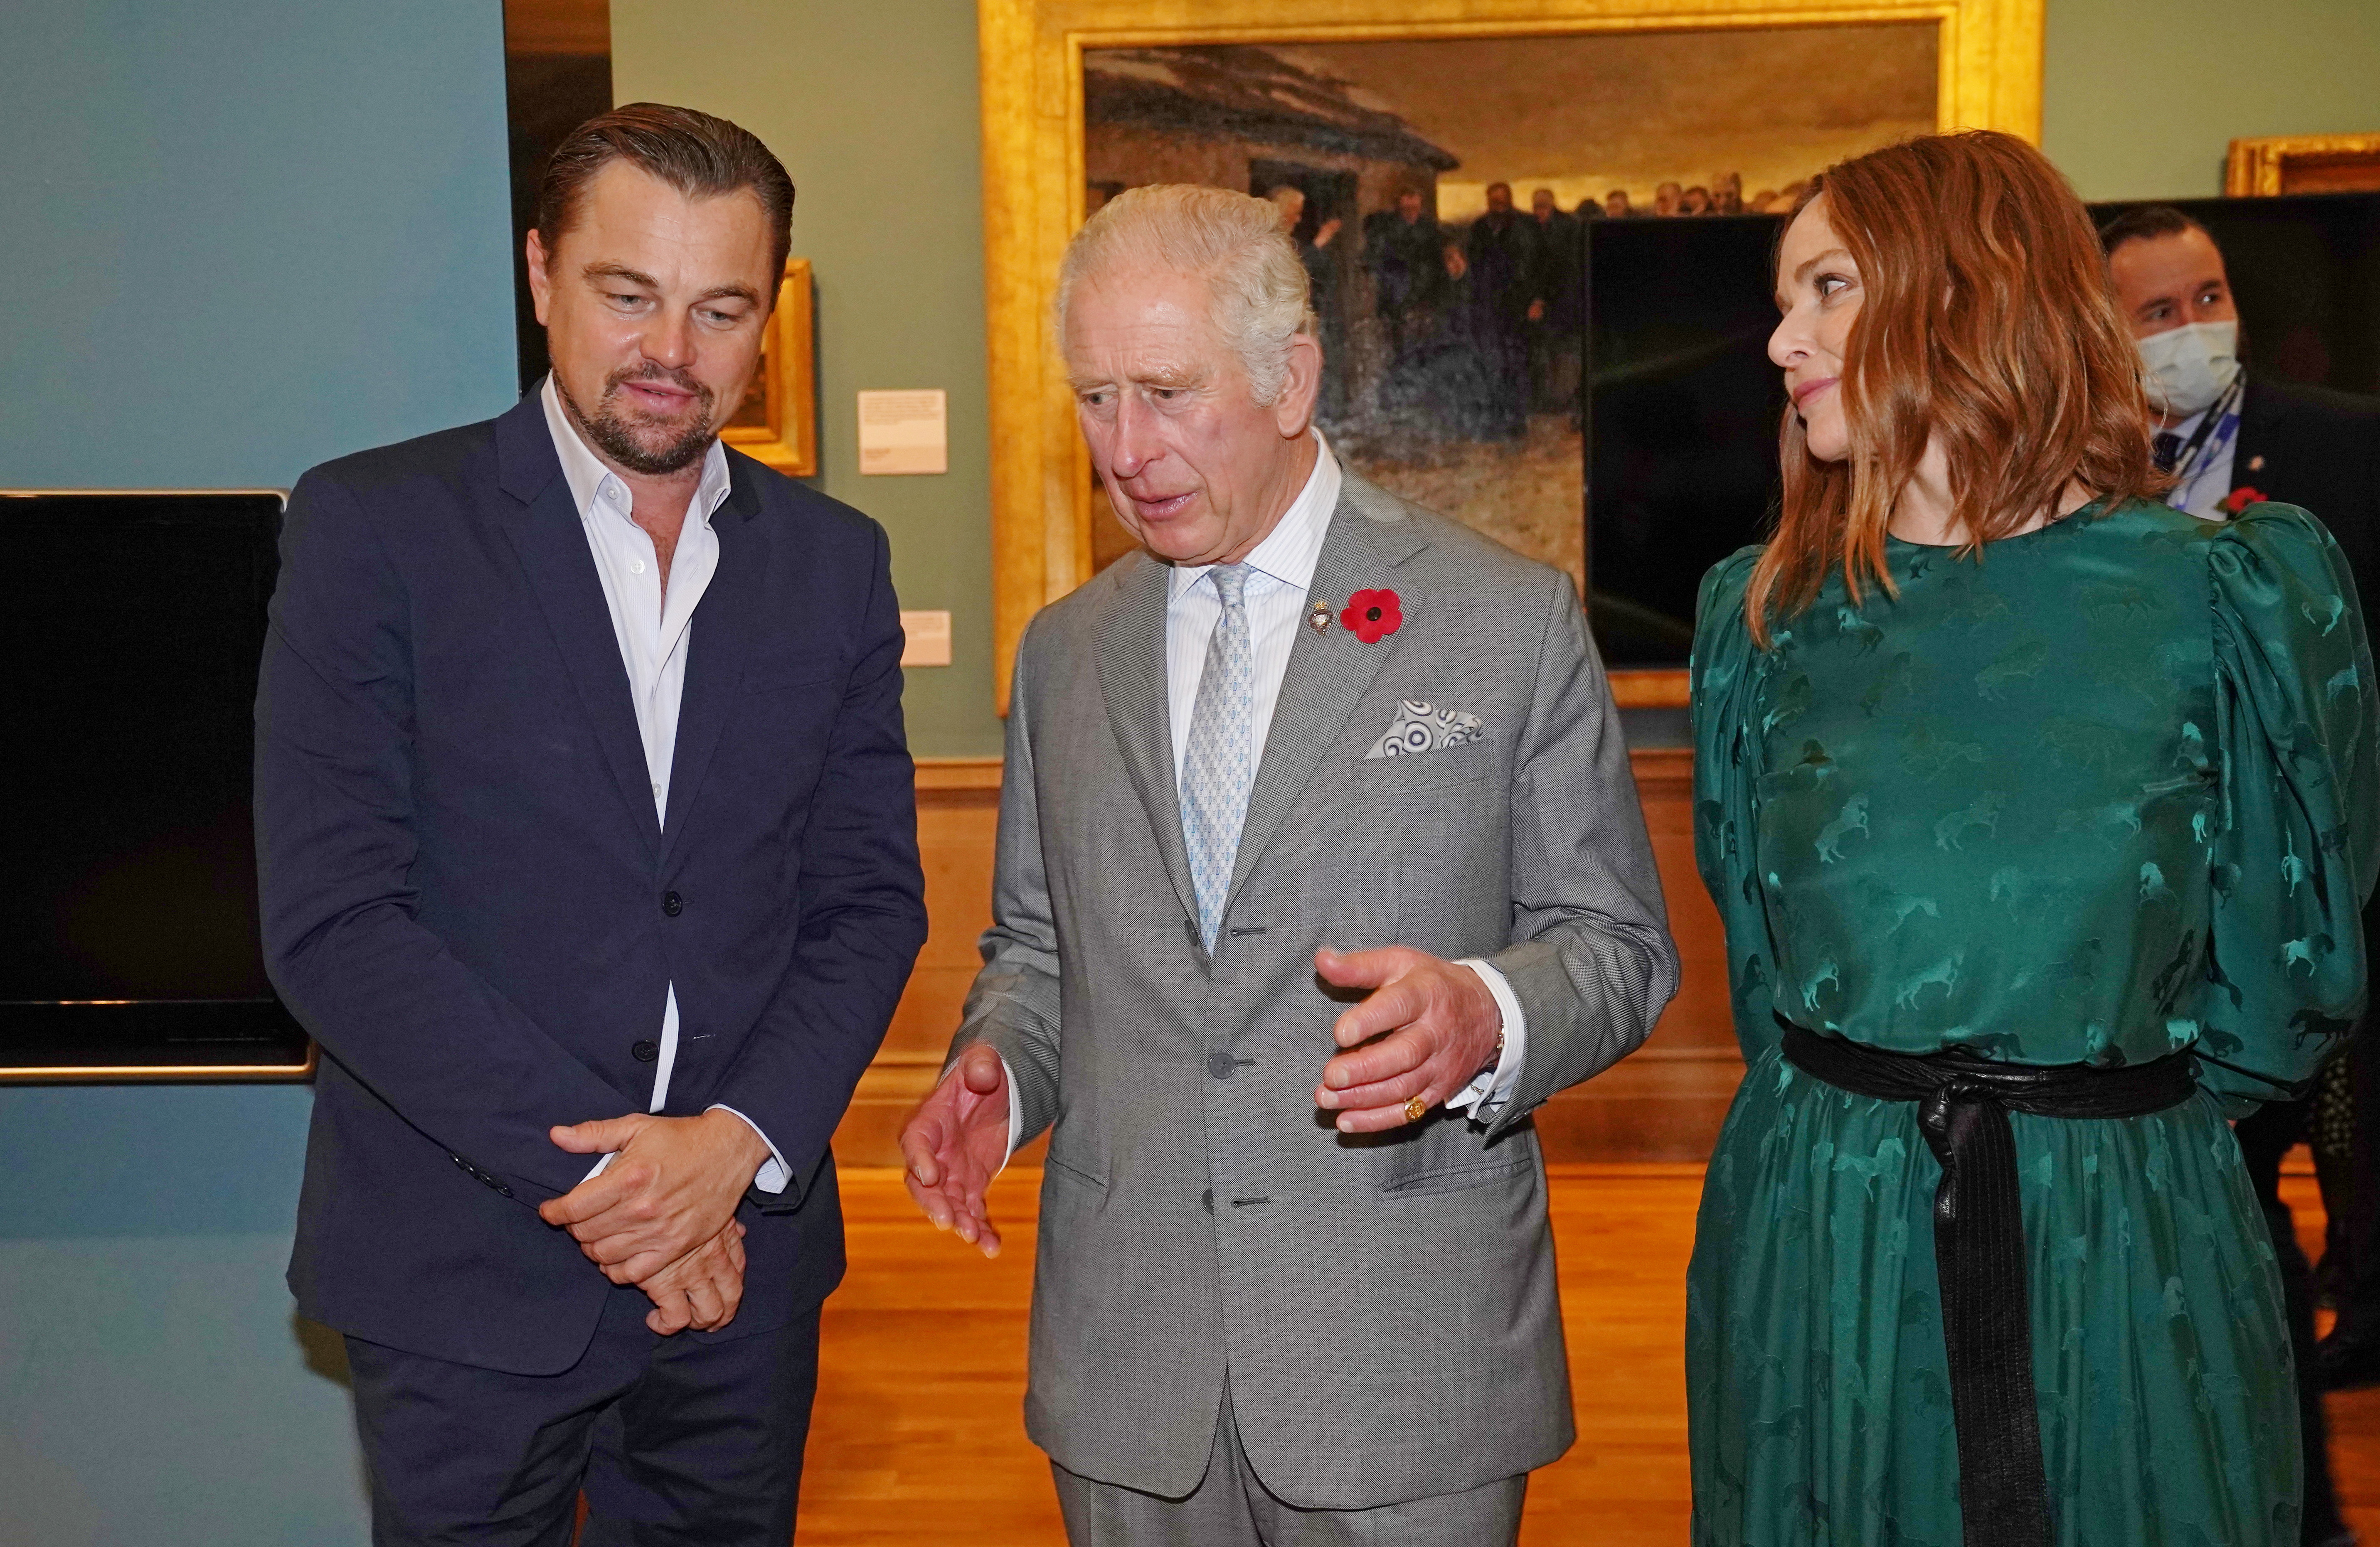 Леонардо Ди Каприо заодно пообщался с принцем Чарльзом и побывал на фешен инсталляции Стеллы МакКартни. Фото: Owen Humphreys/Pool via REUTERS